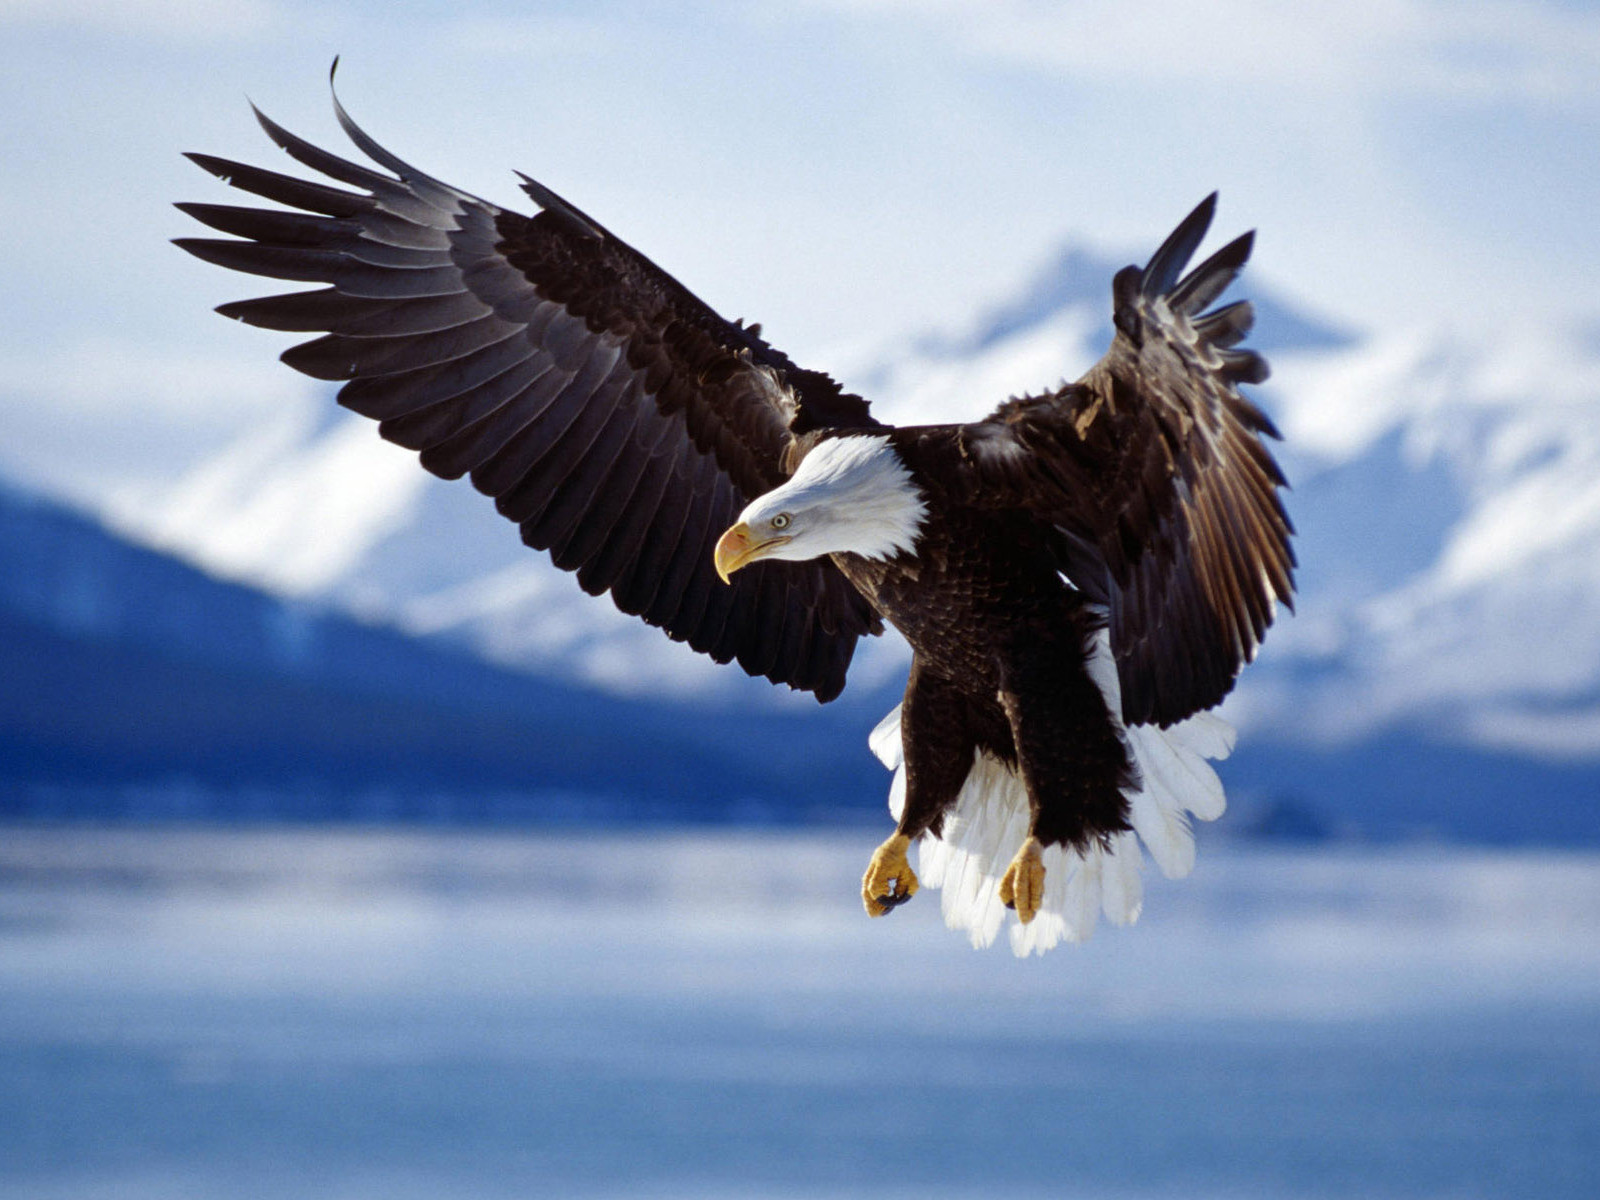 mobile desktop background hd flying eagles pictures